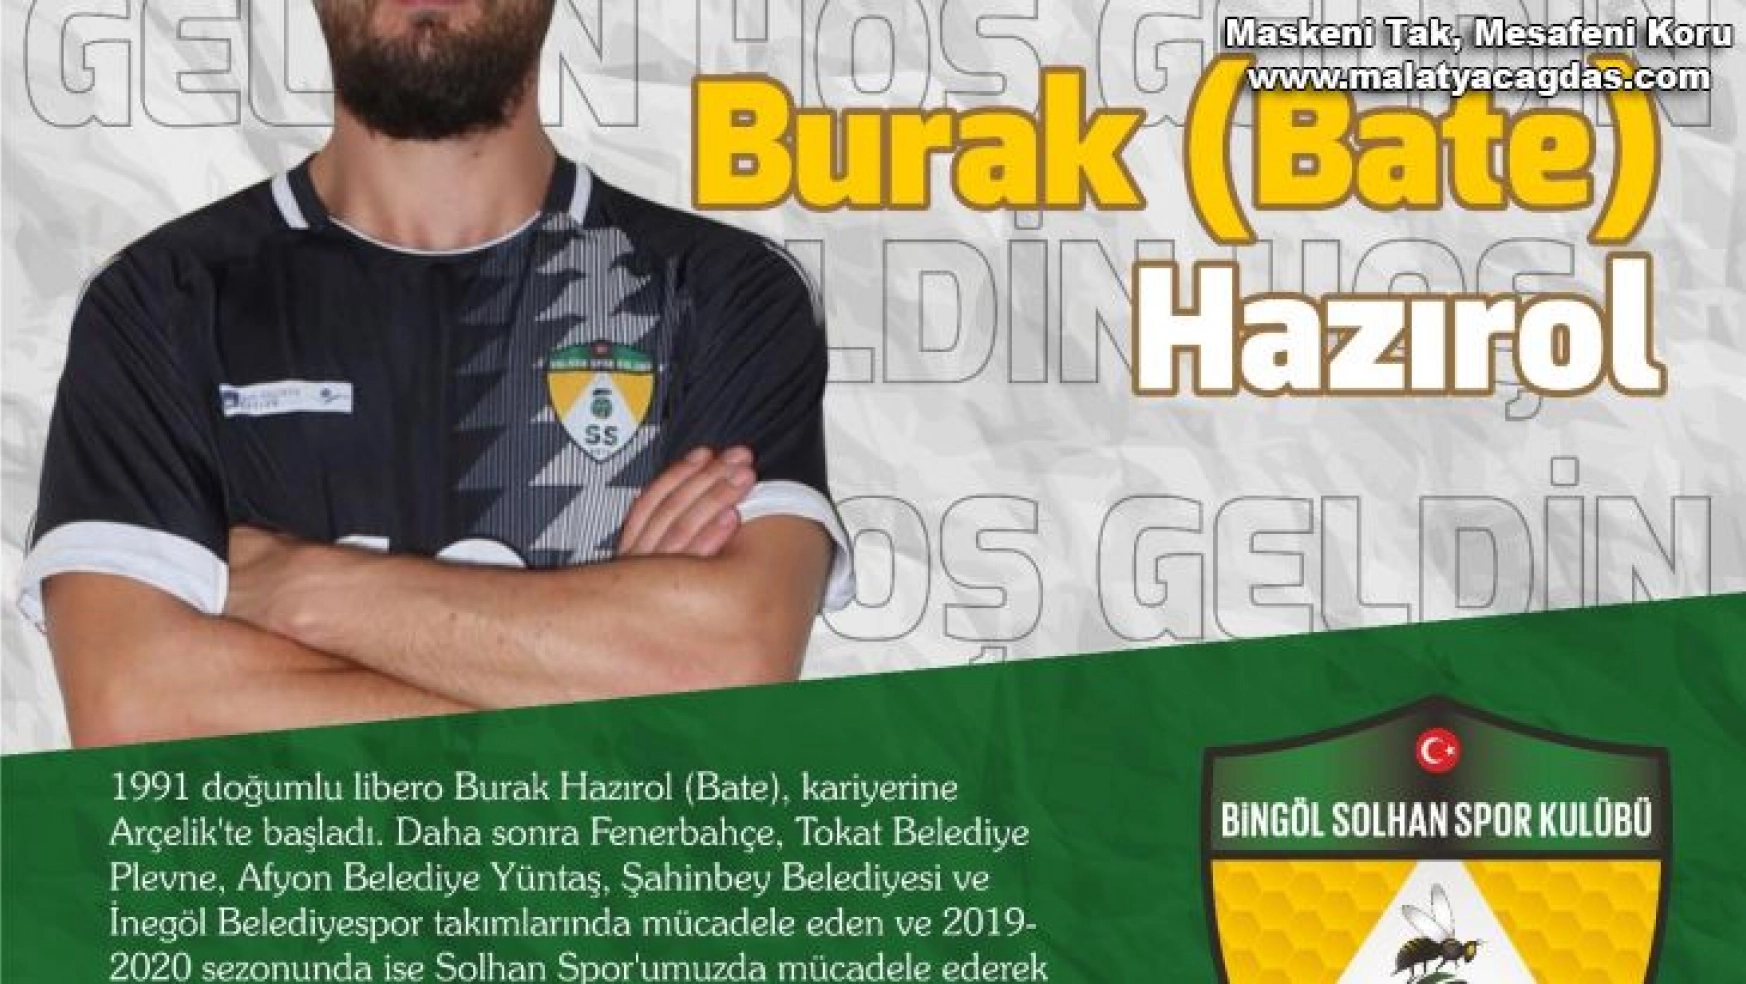 Efeler Ligi'nden Bingöl Solhanspor'a iki transfer